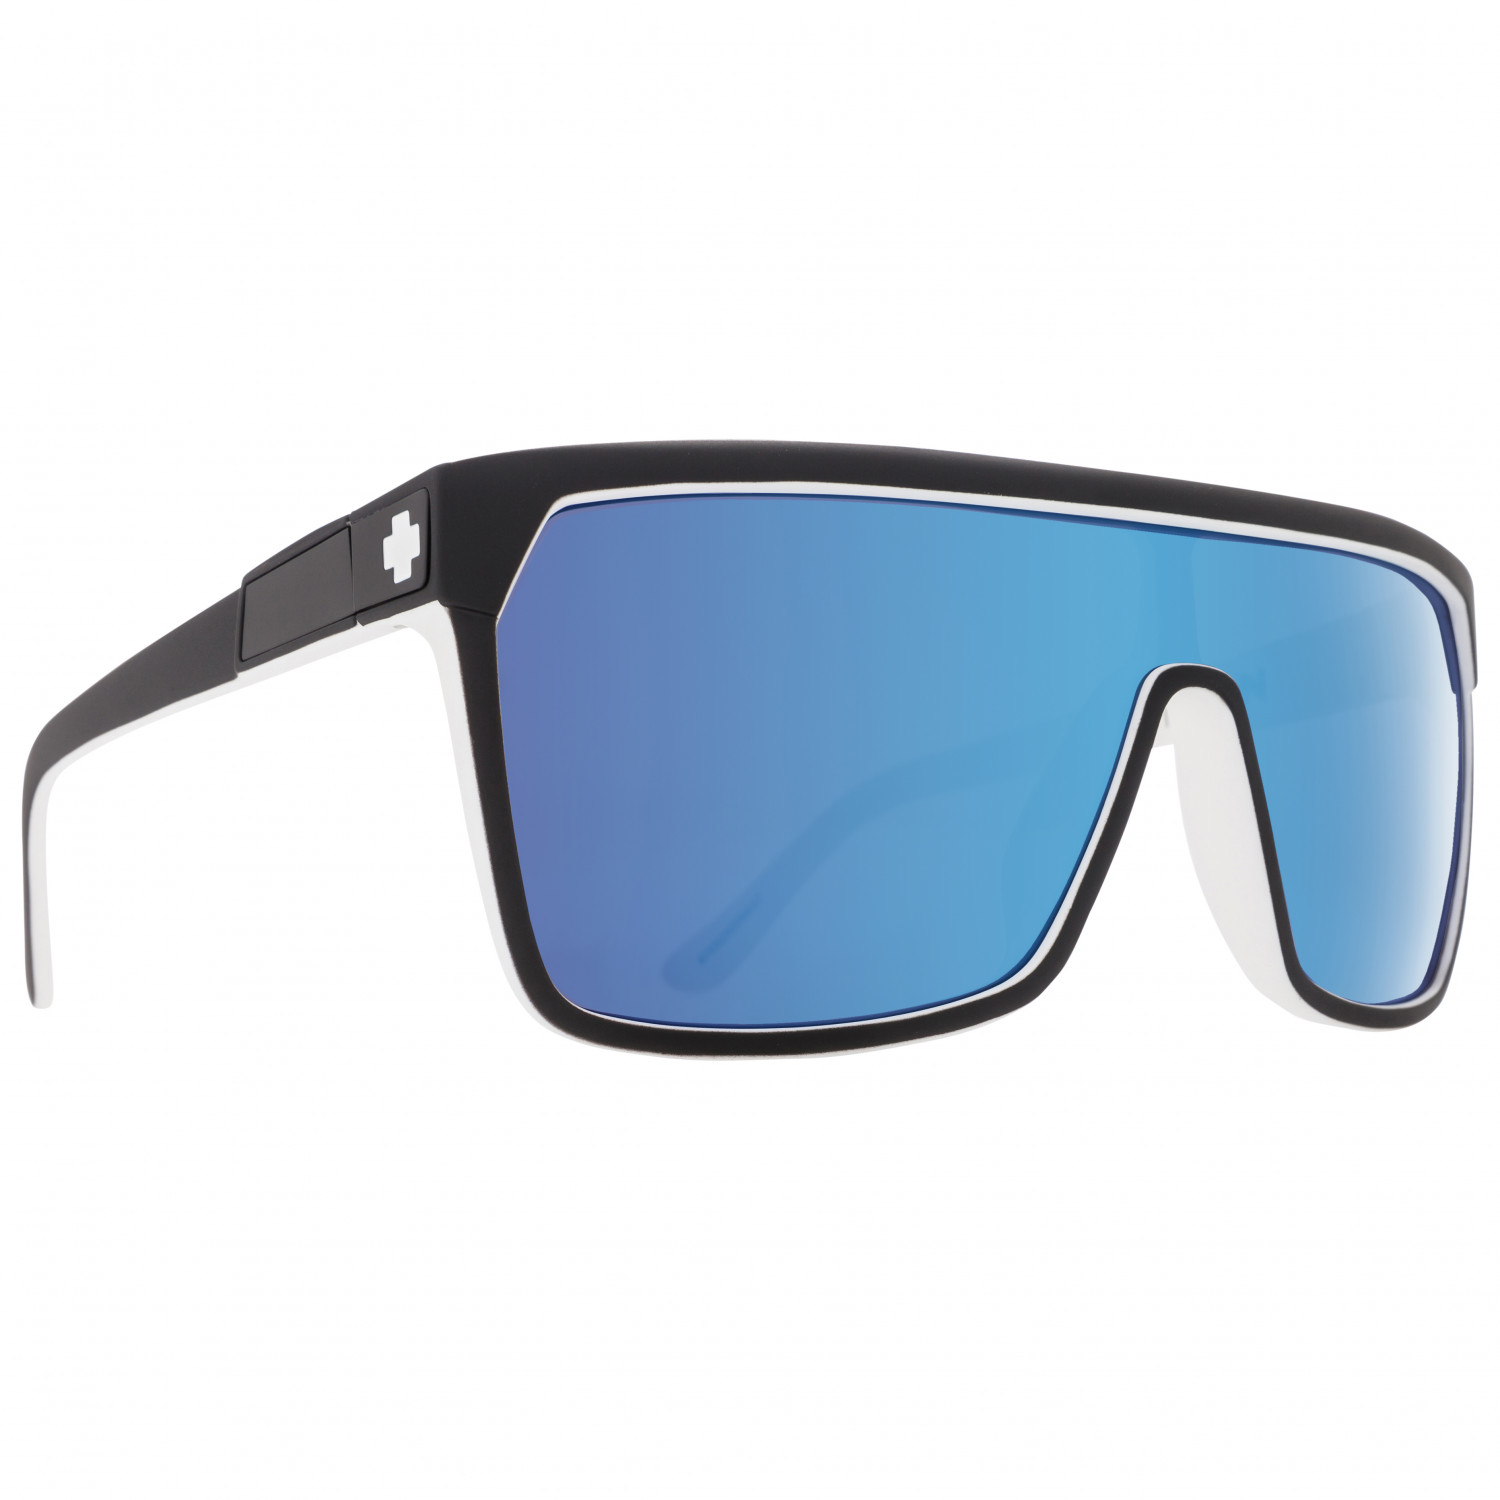 Солнцезащитные очки Spy+ Flynn S3 (VLT 15%), цвет Whitewall